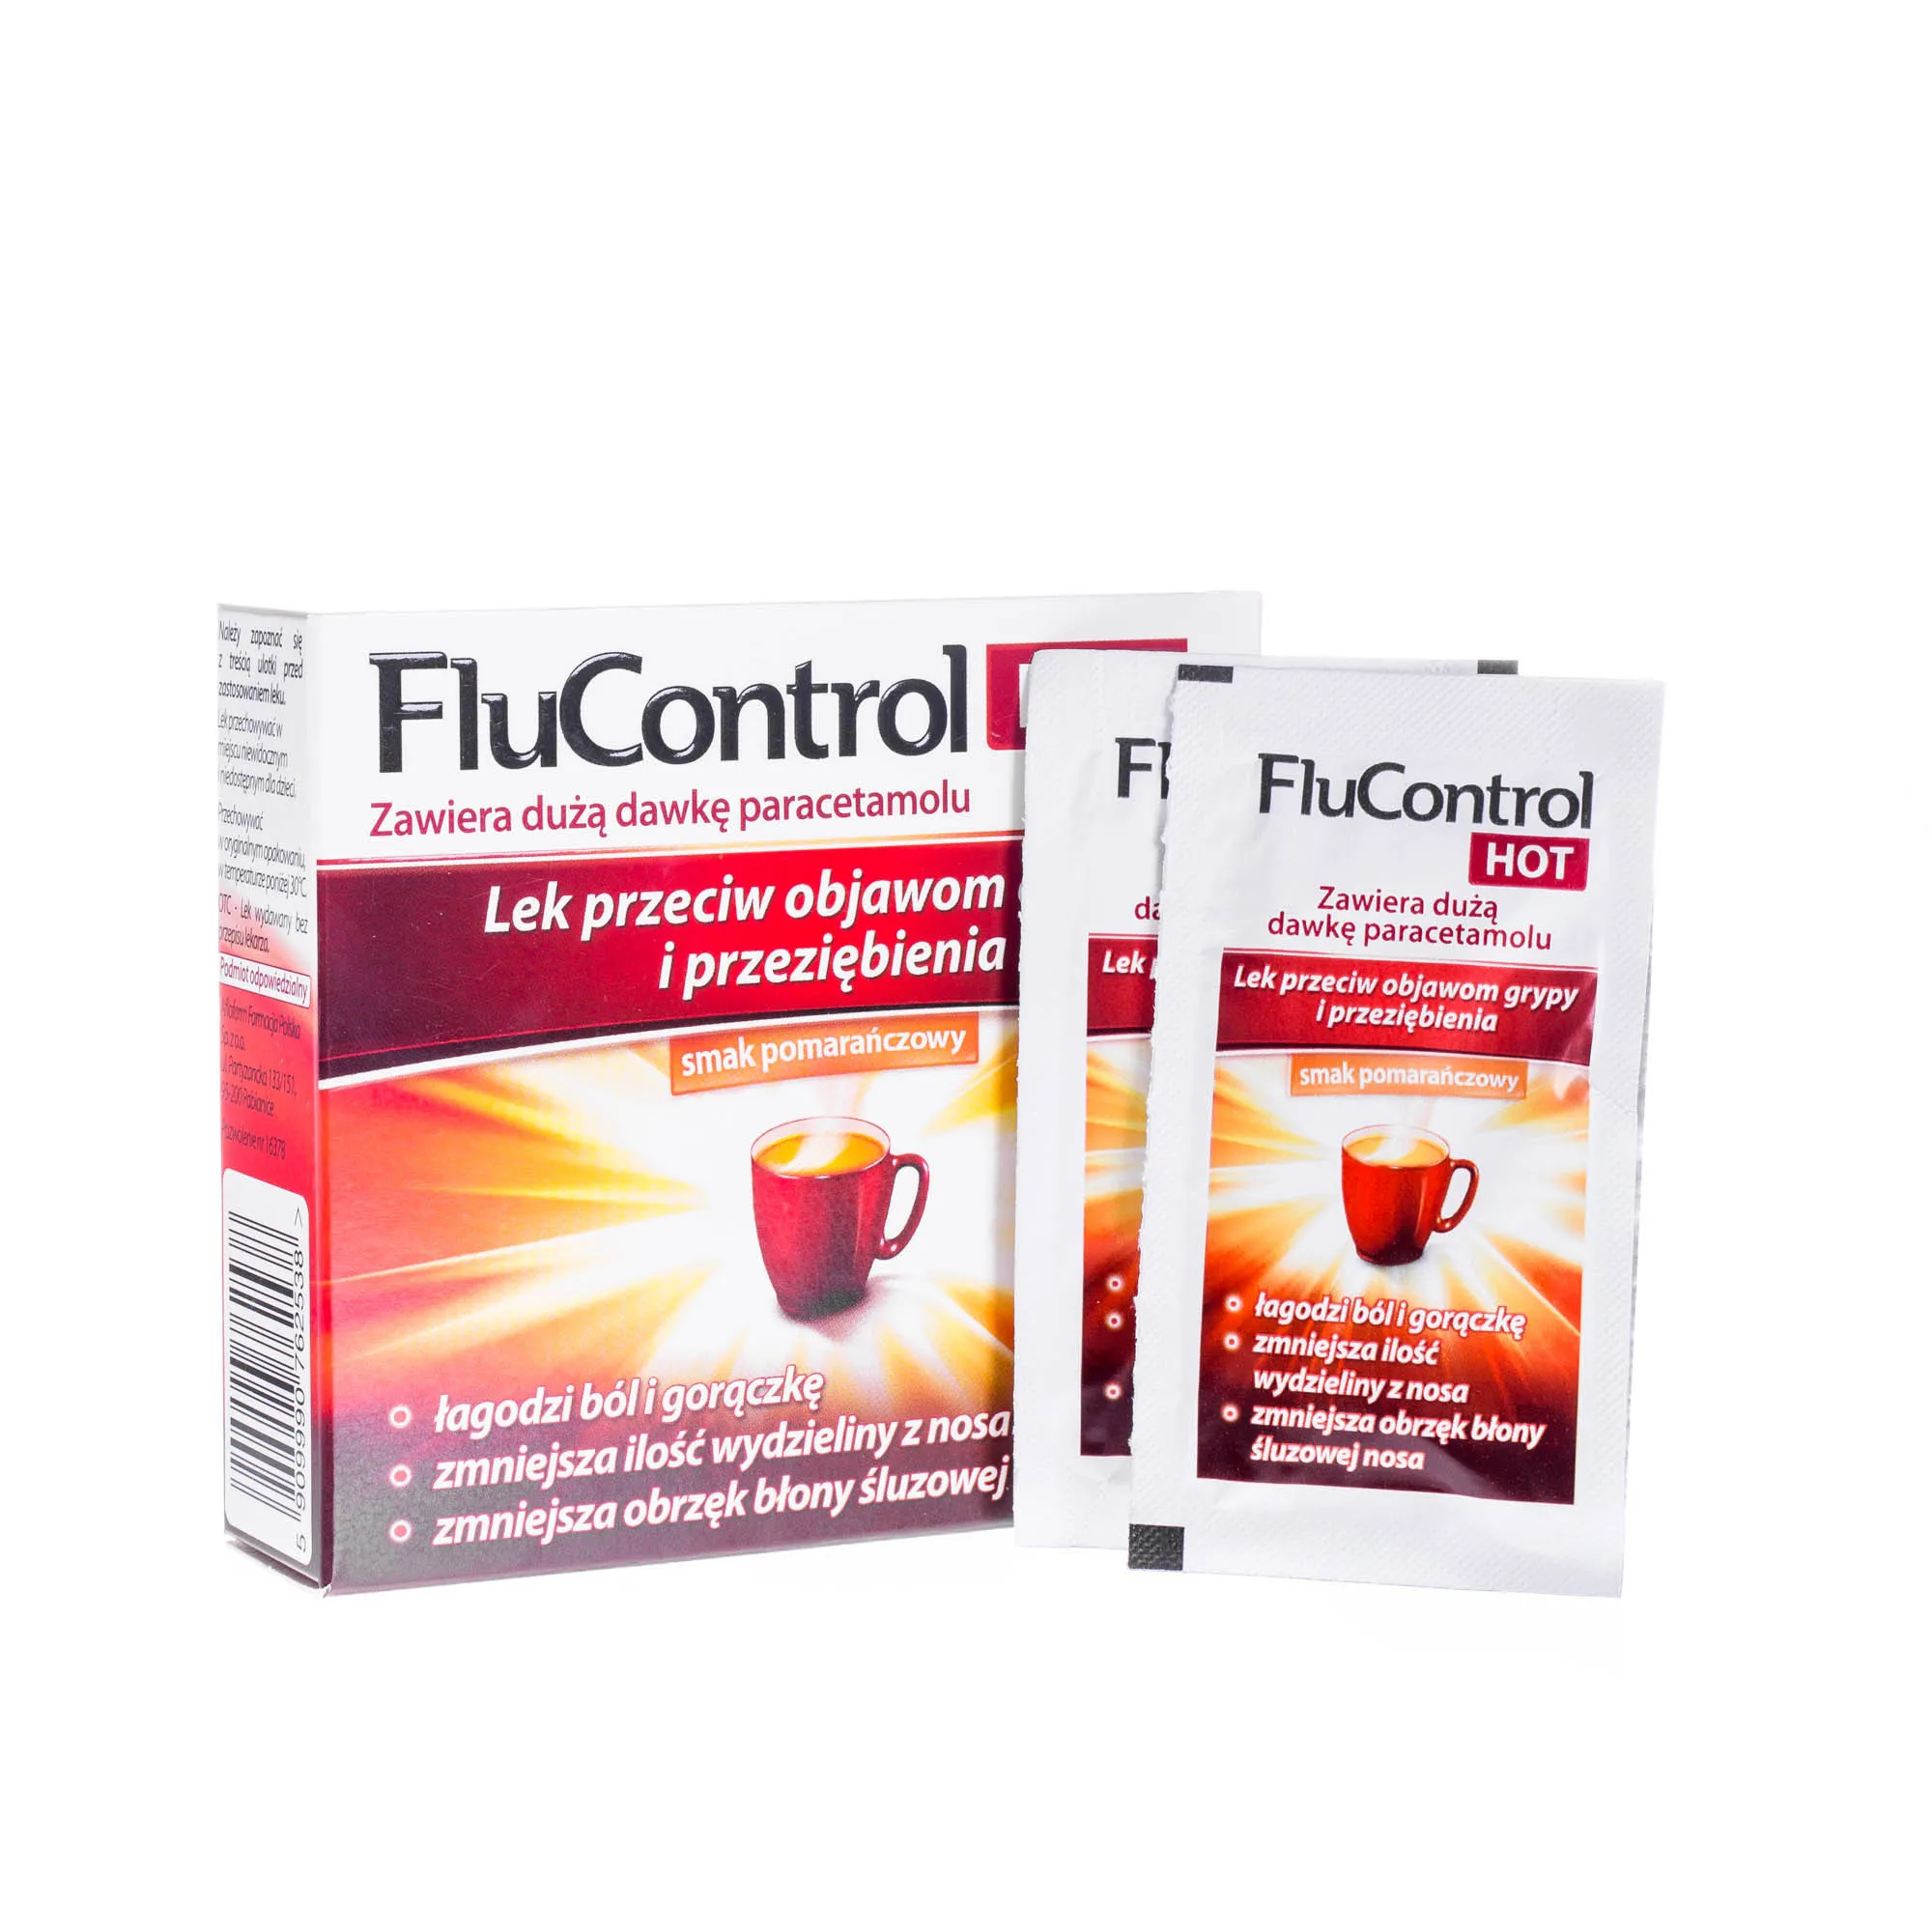 FluControl Hot - lek przeciw objawom grypy i przeziębienia, 8 saszetek